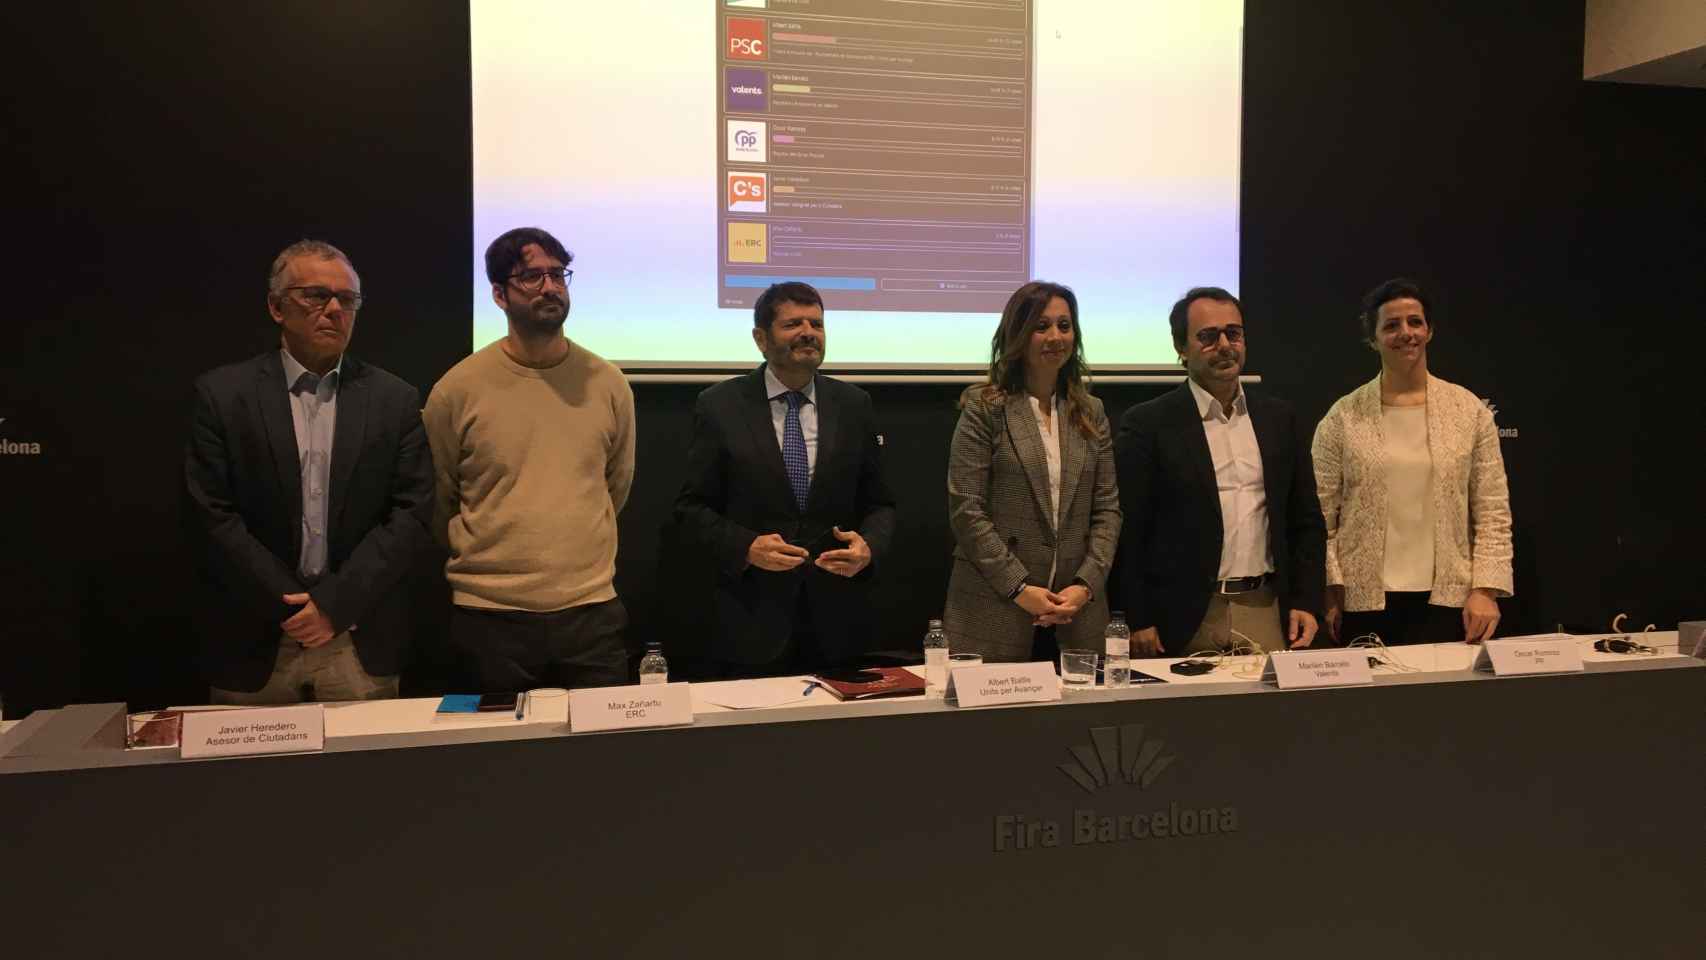 Representantes de las formaciones políticas de Barcelona tras el debate / METRÓPOLI - RP